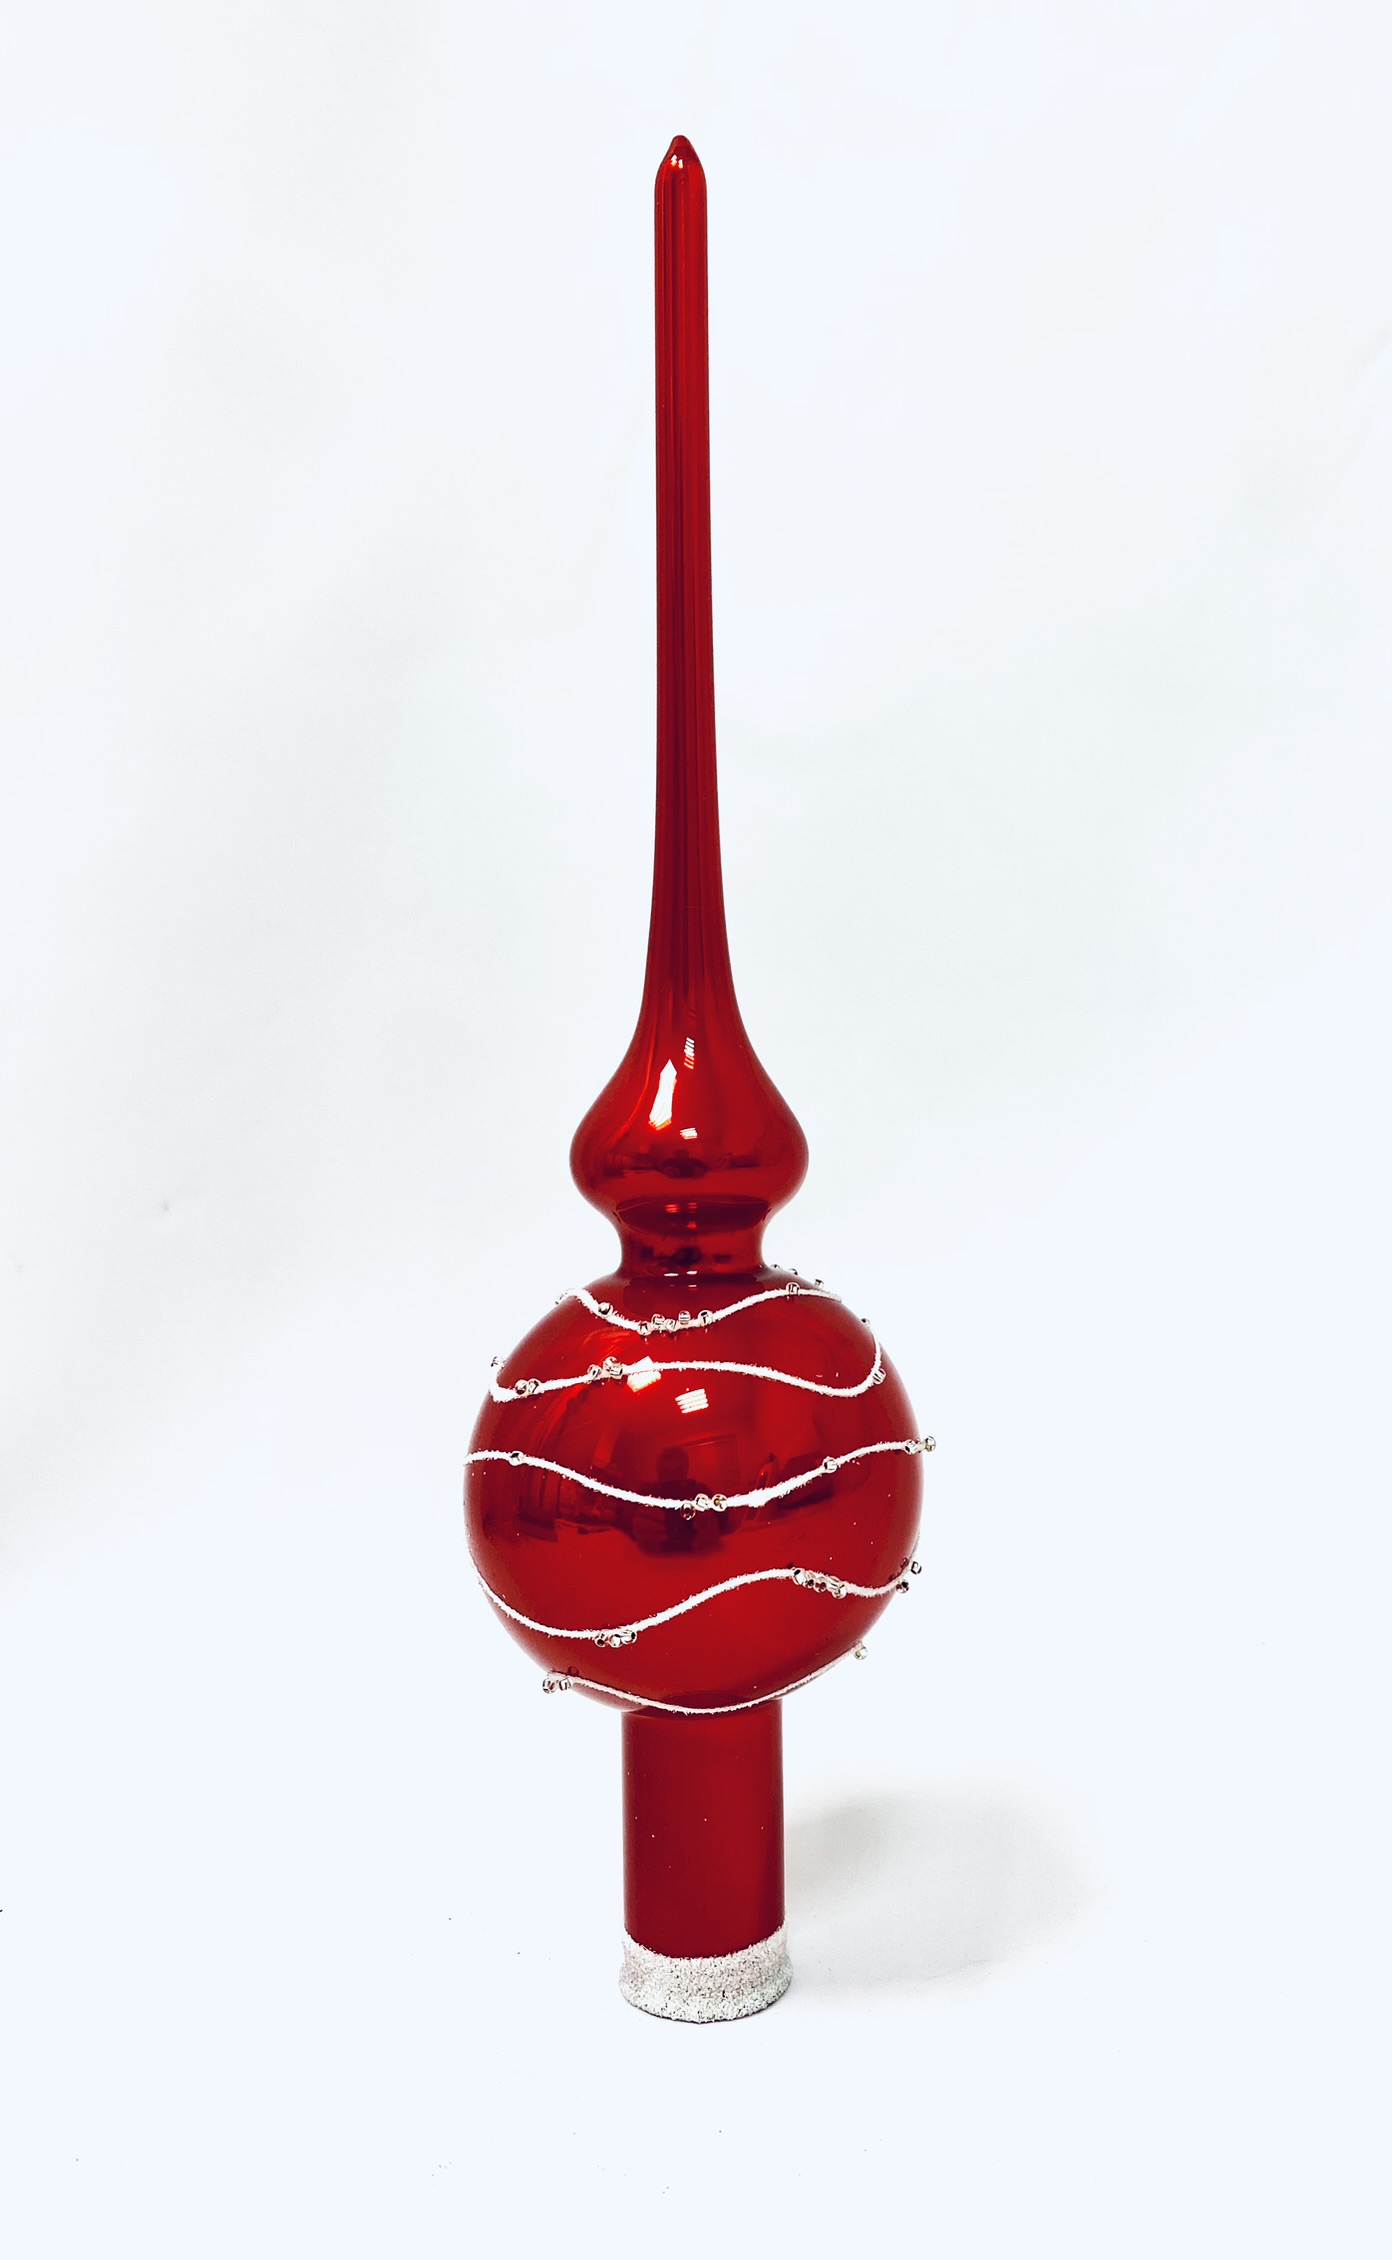 Irisa Červený zázrak: Vánoční skleněná špice s vodním dekorem - 28 cm, 1 ks Balení: 1ks, Barva: červená, Velikost: 28 cm